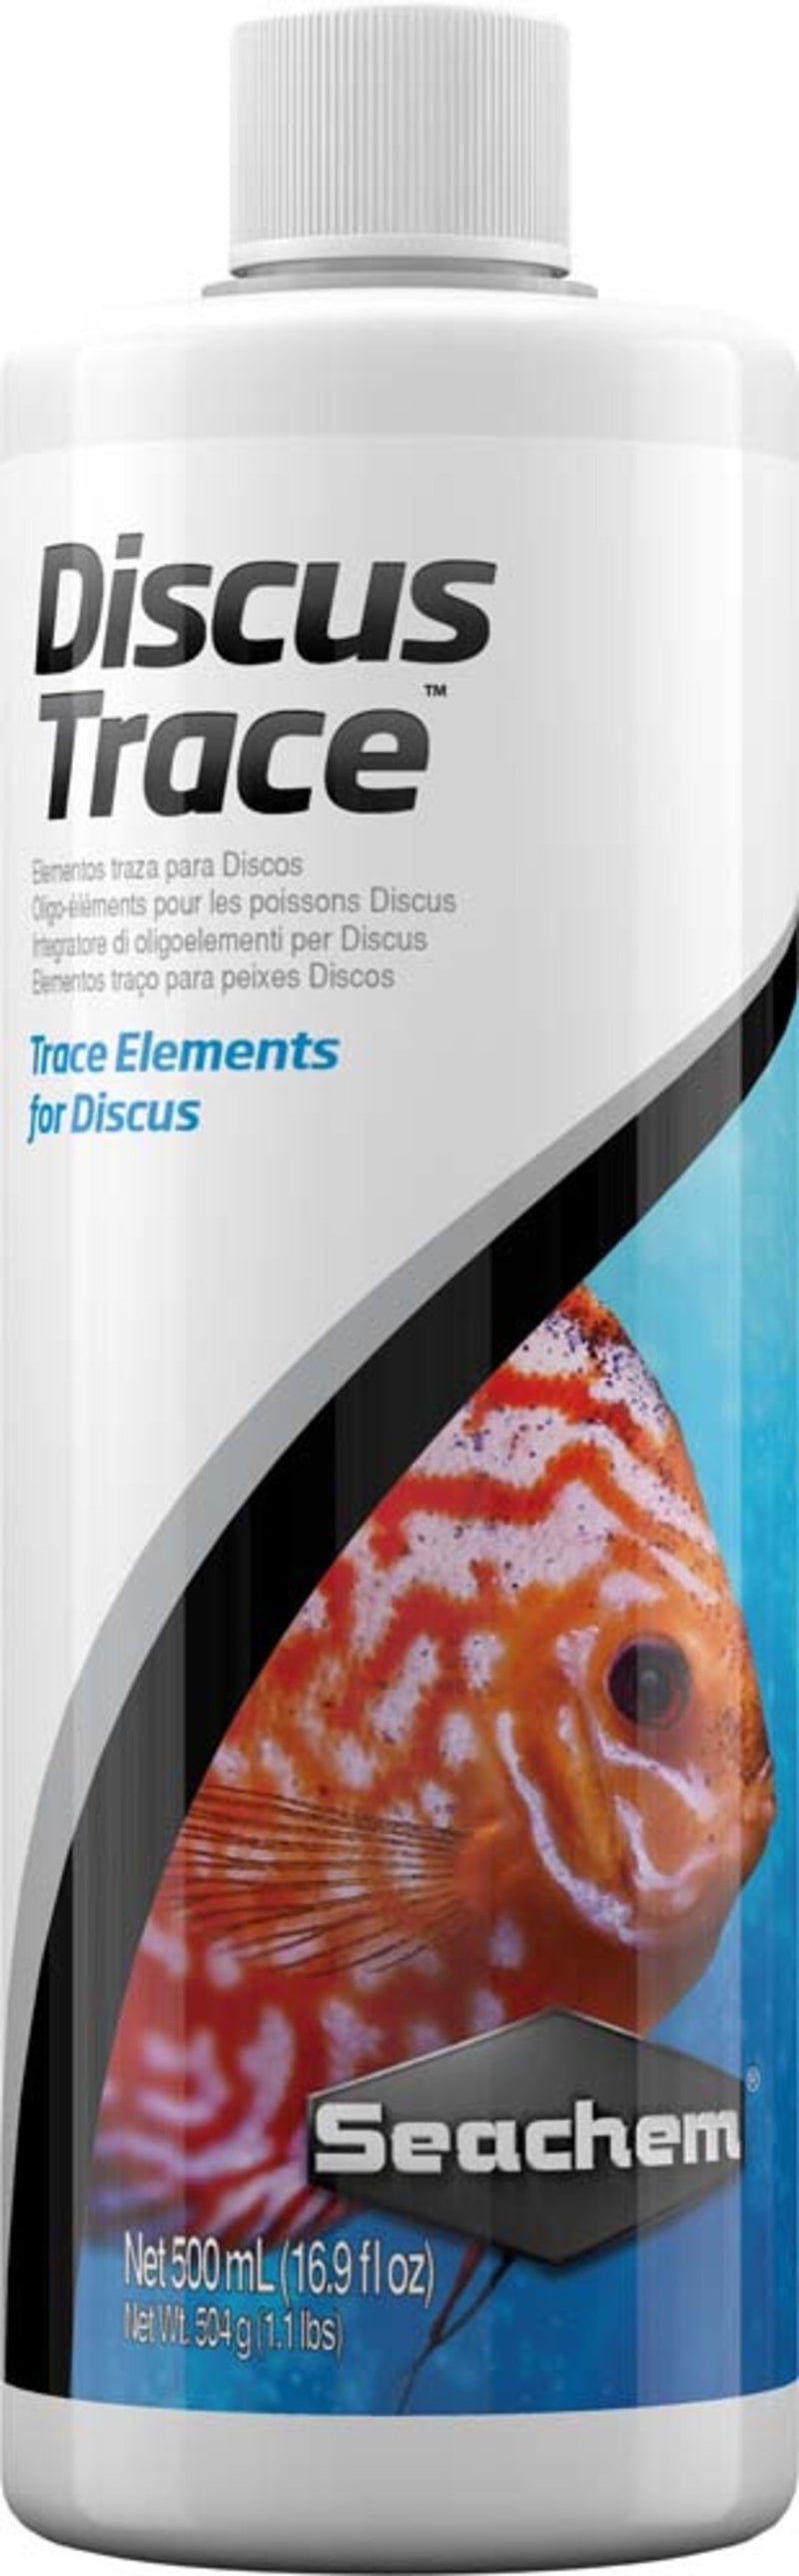 Seachem Laboratories Discus Trace Elements Supplement